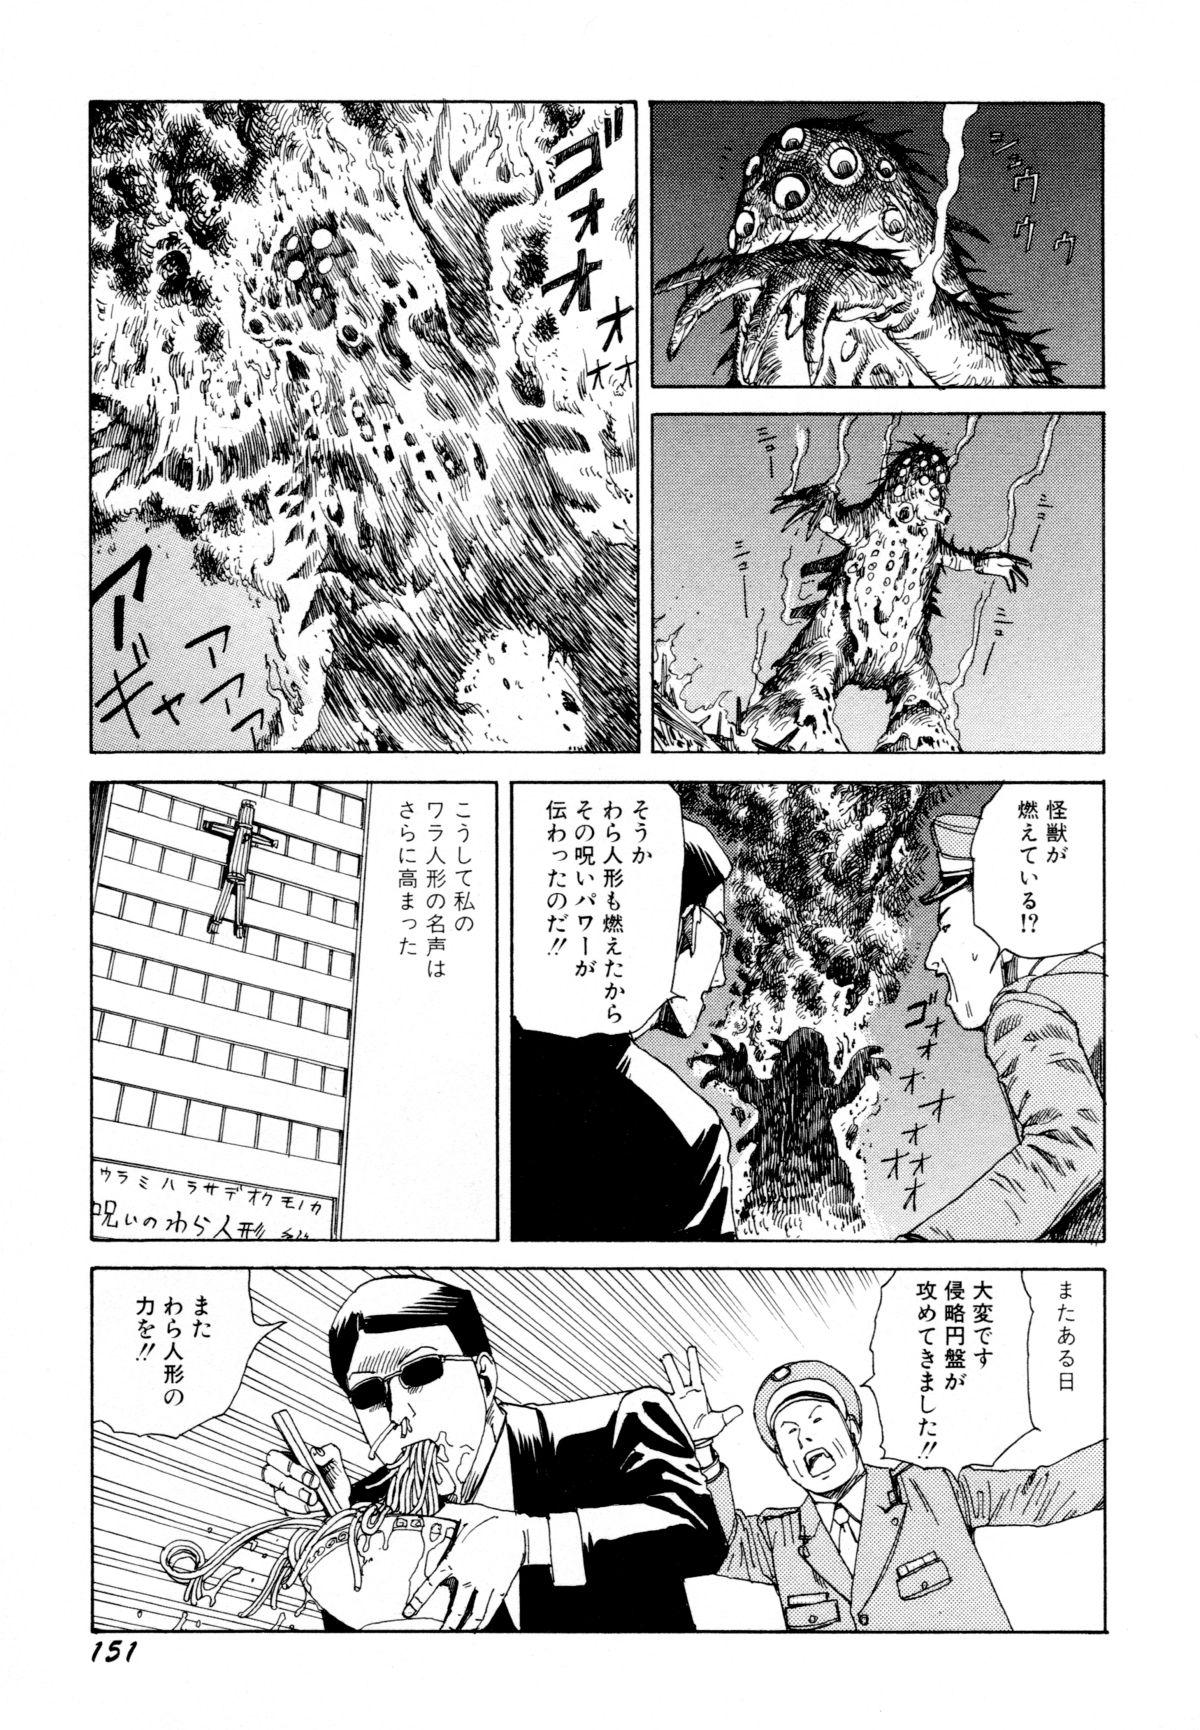 Arijigoku vs Barabara Shoujo - Antlion vs BaraBara Girl 152